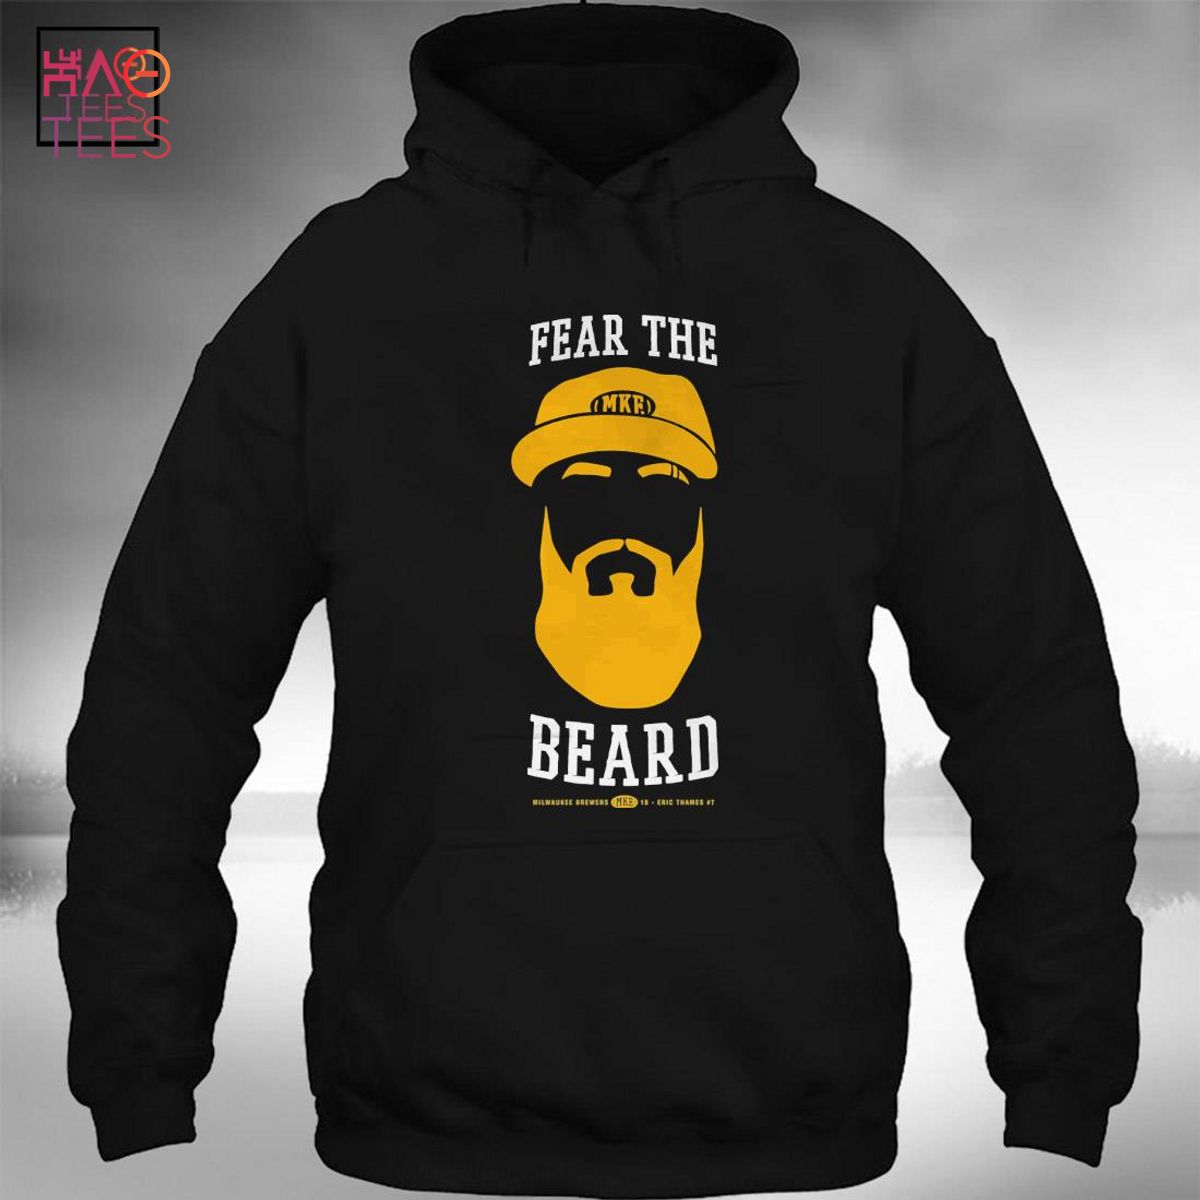 Eric Thames - Fear the Beard T-Shirt